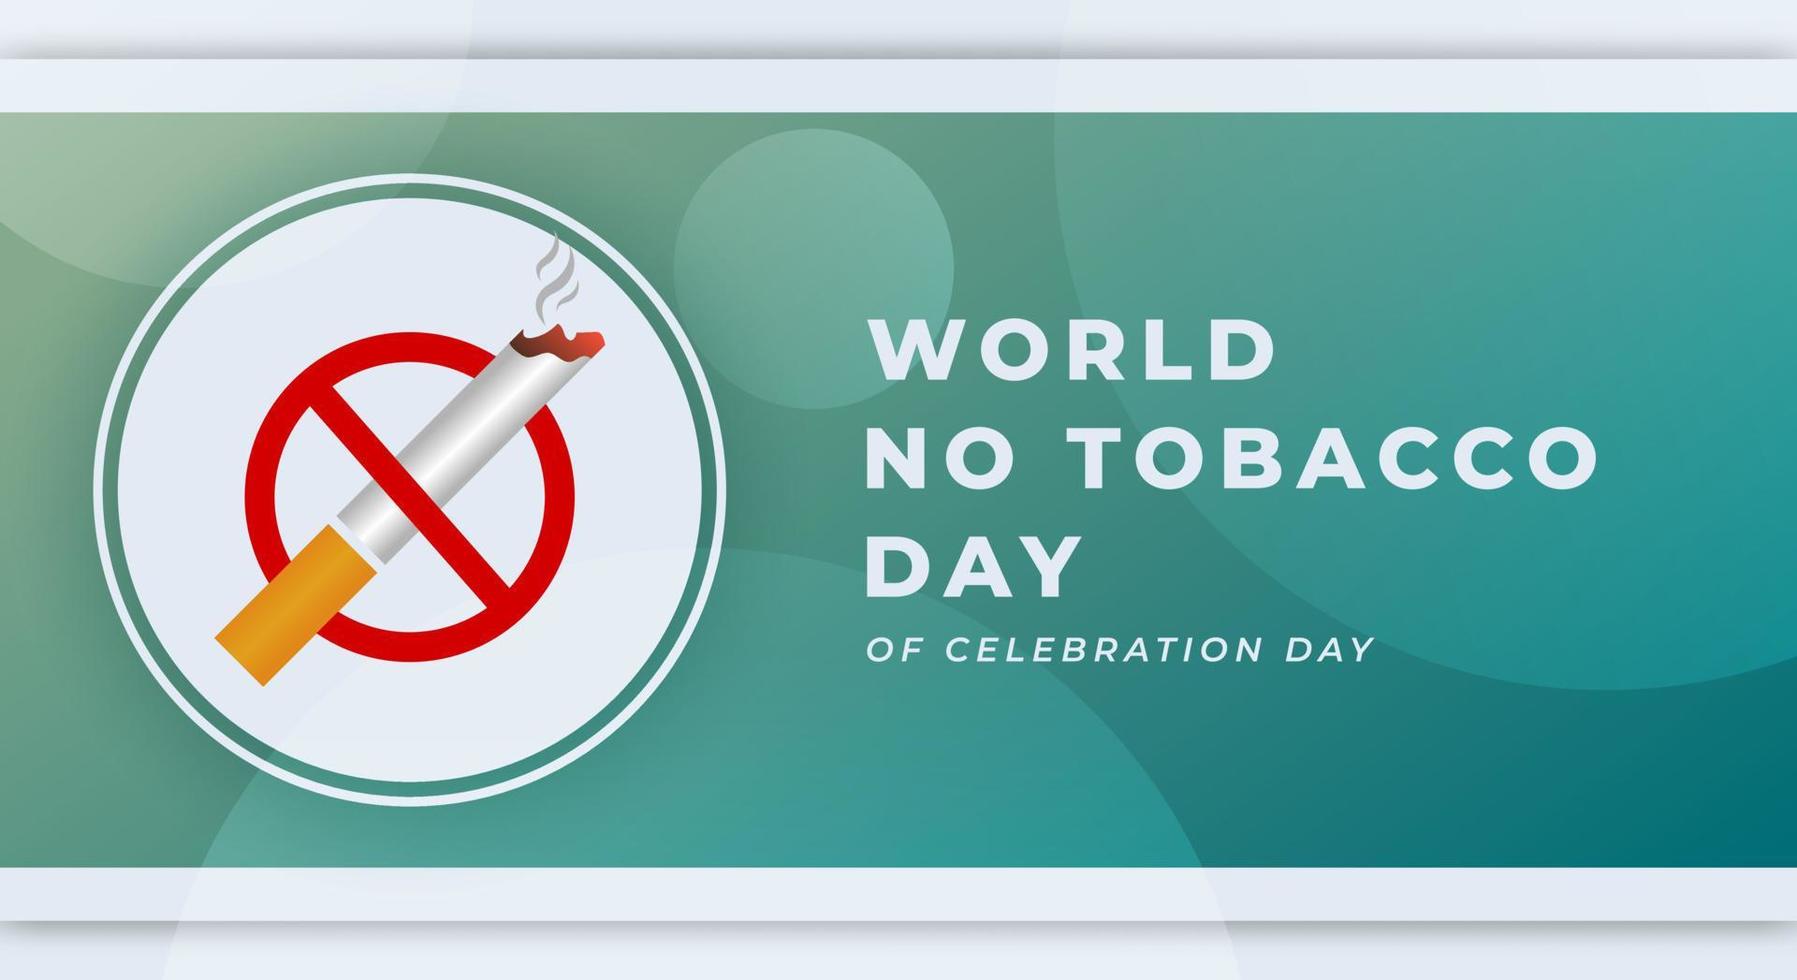 mundo não tabaco dia celebração vetor Projeto ilustração para fundo, poster, bandeira, anúncio, cumprimento cartão